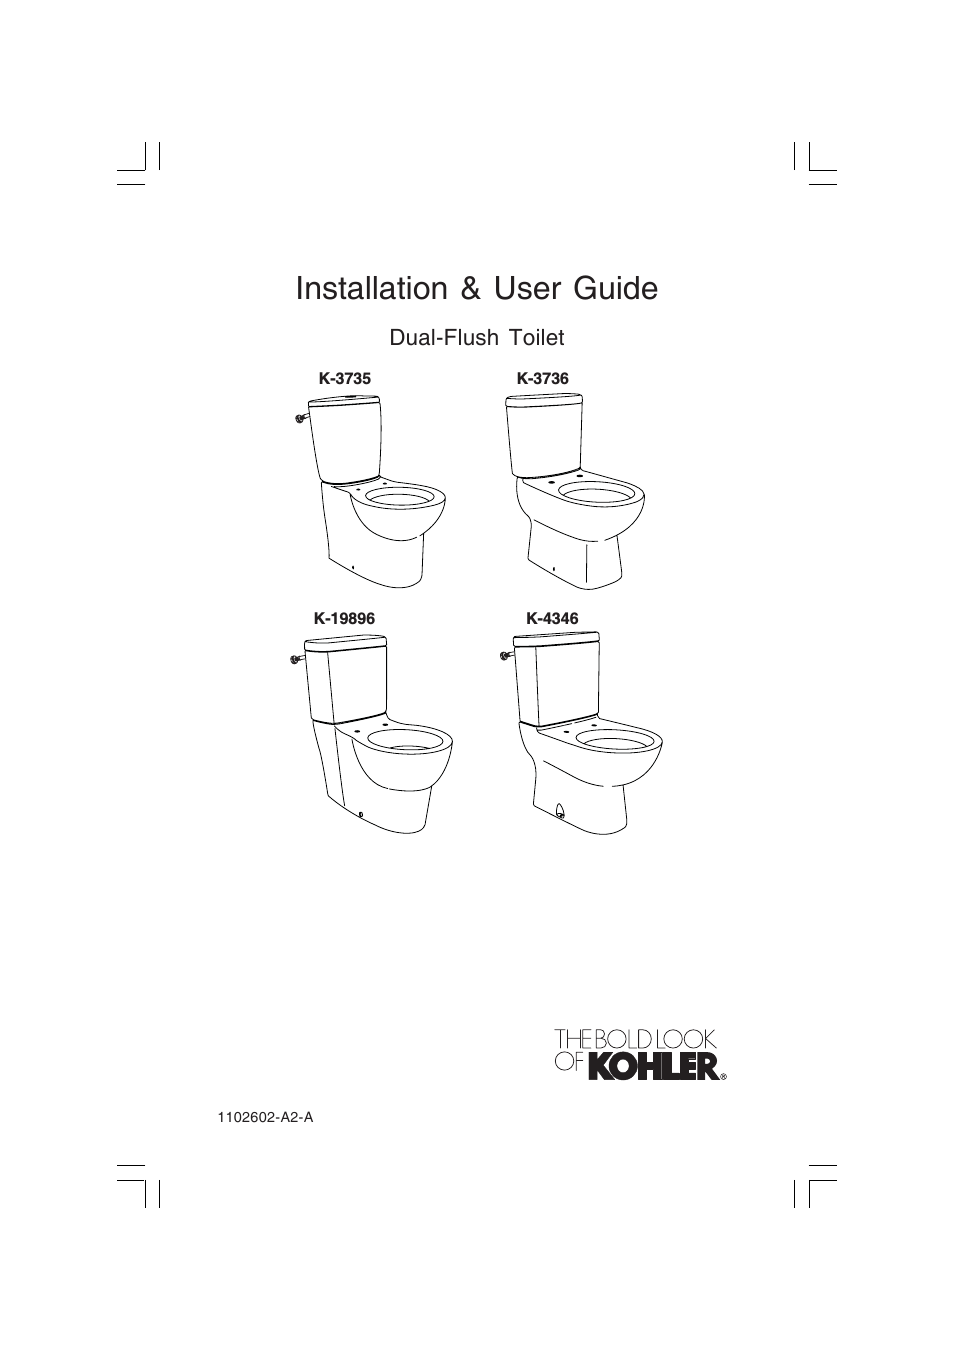 Dual-Flush Toilet K-3735